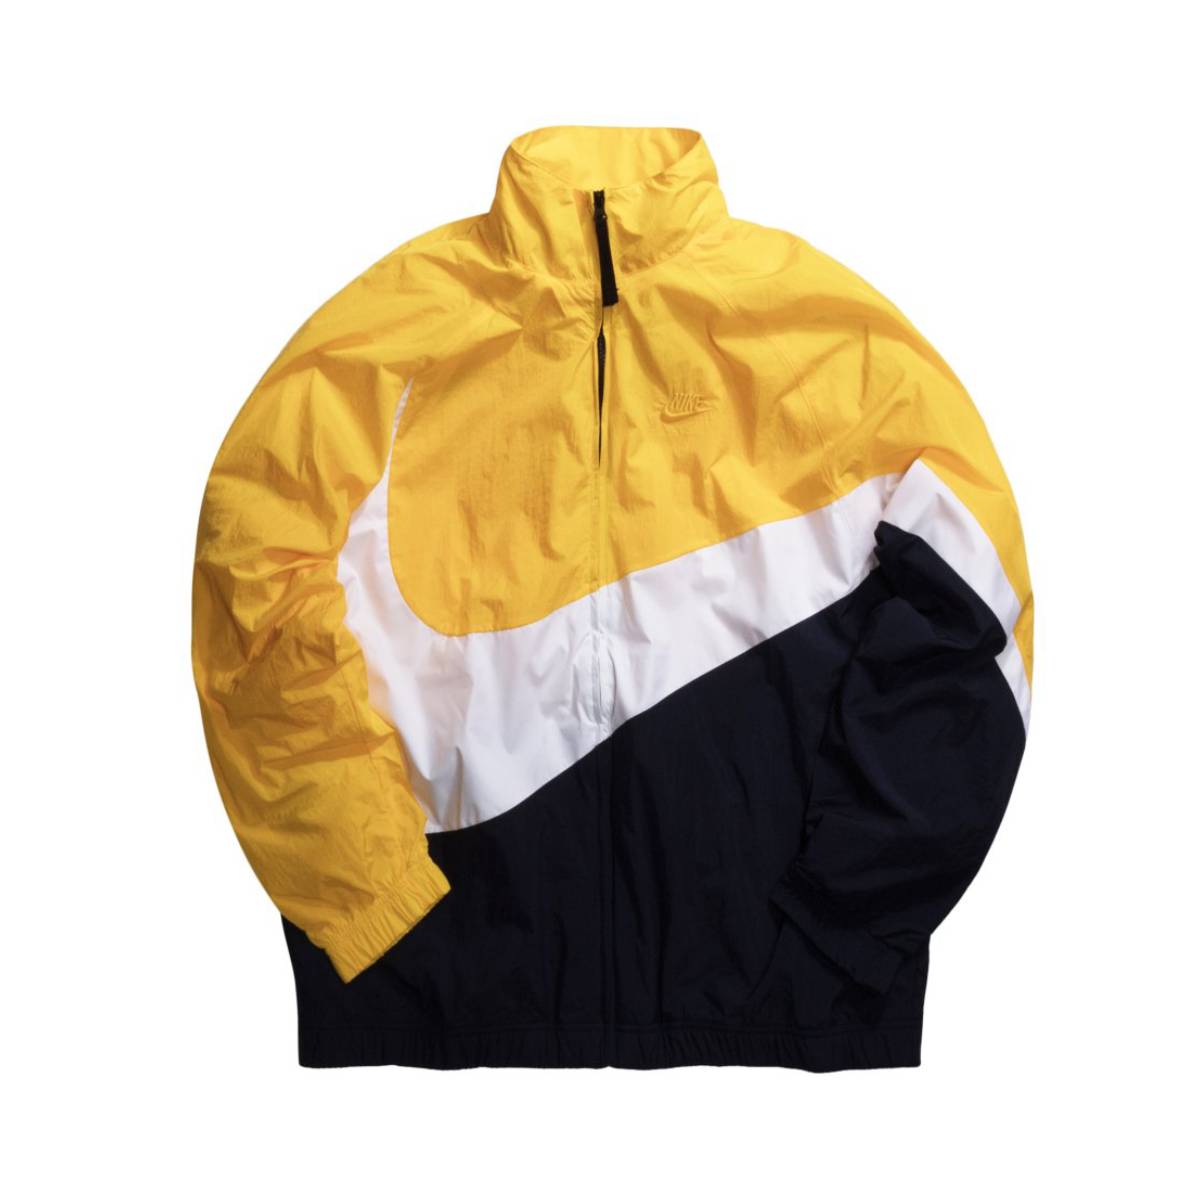 yellow nike jacket